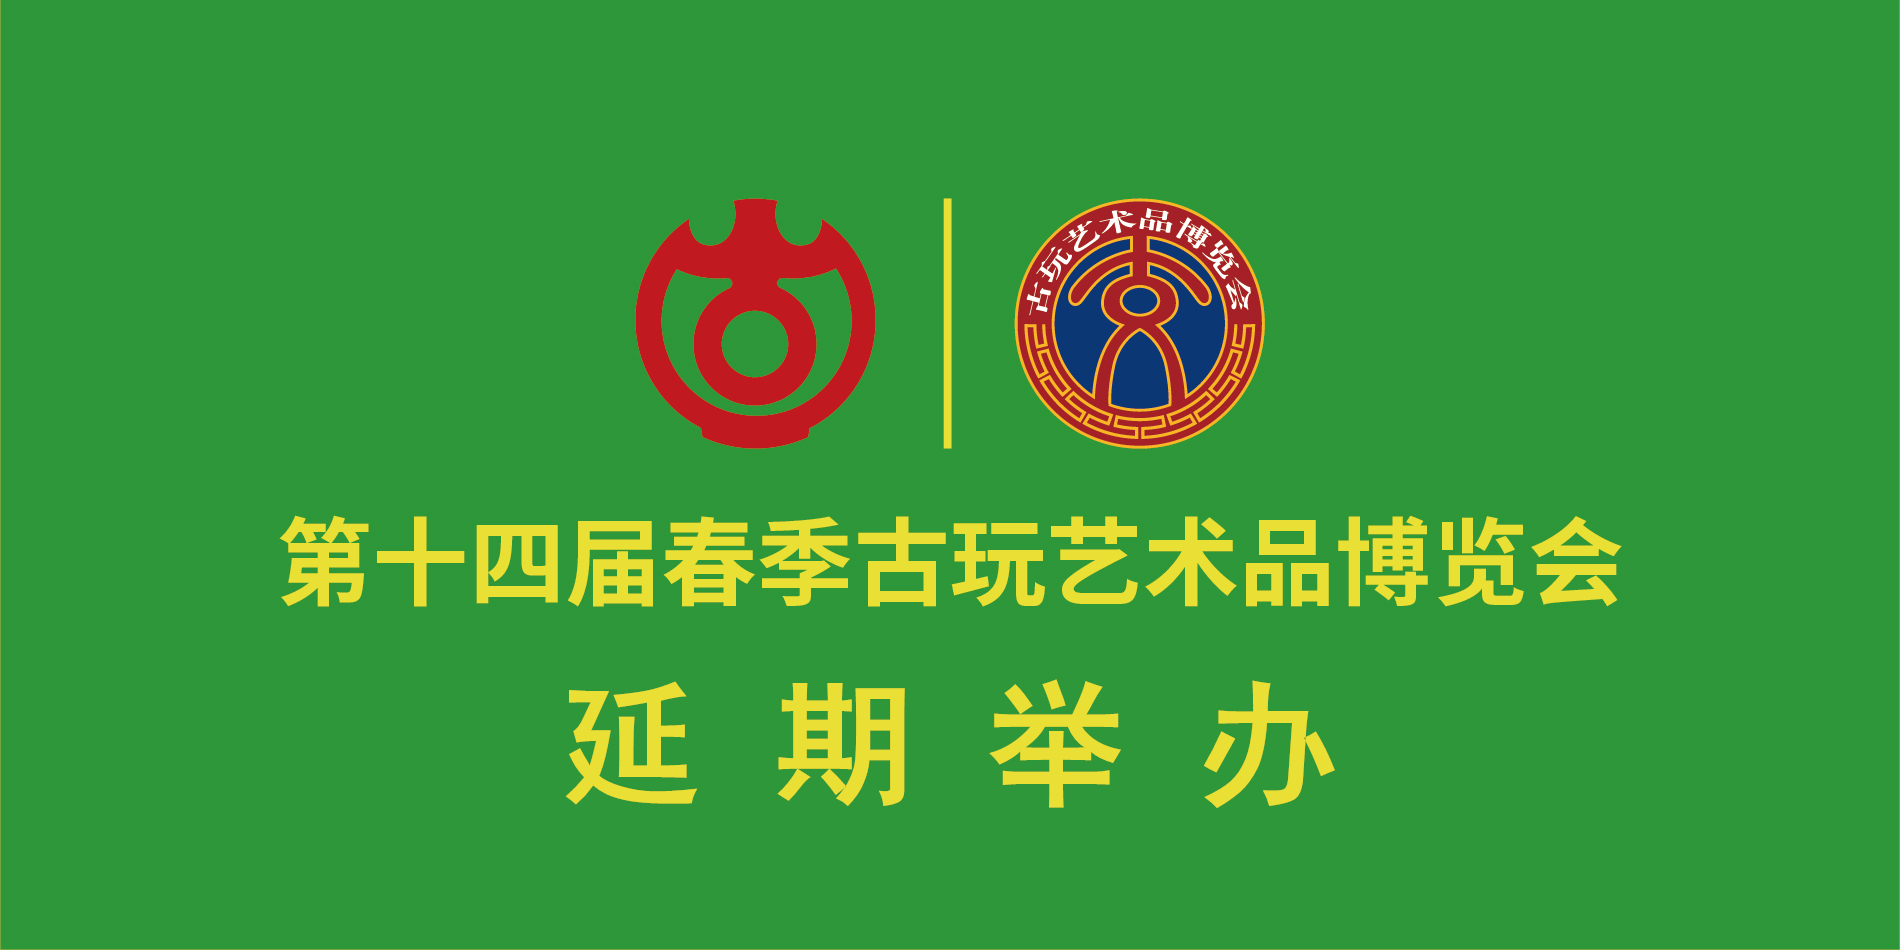 延期公告丨北京古玩城第十四届春季古玩艺术品博览会延期公告